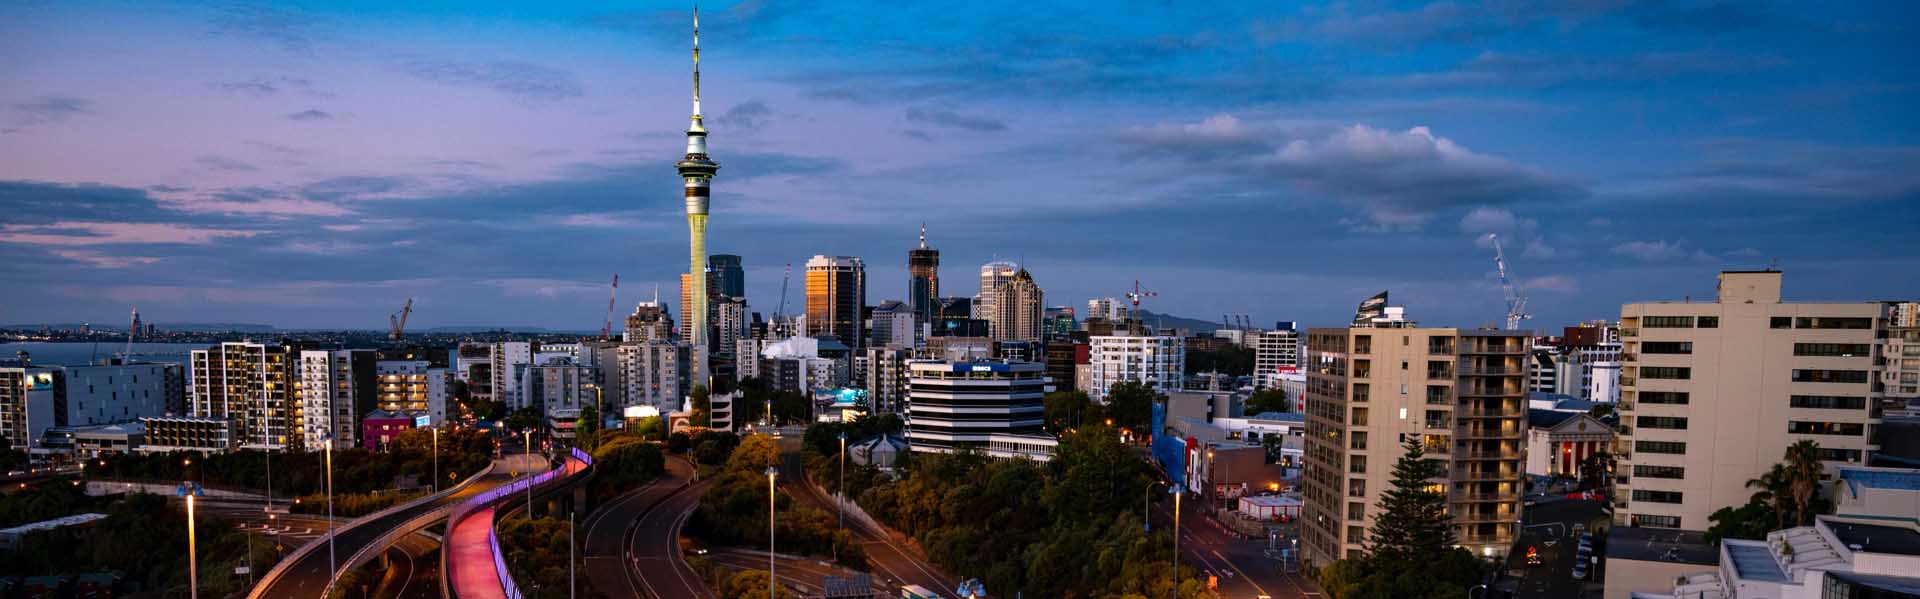 Auckland city skyline at dusk